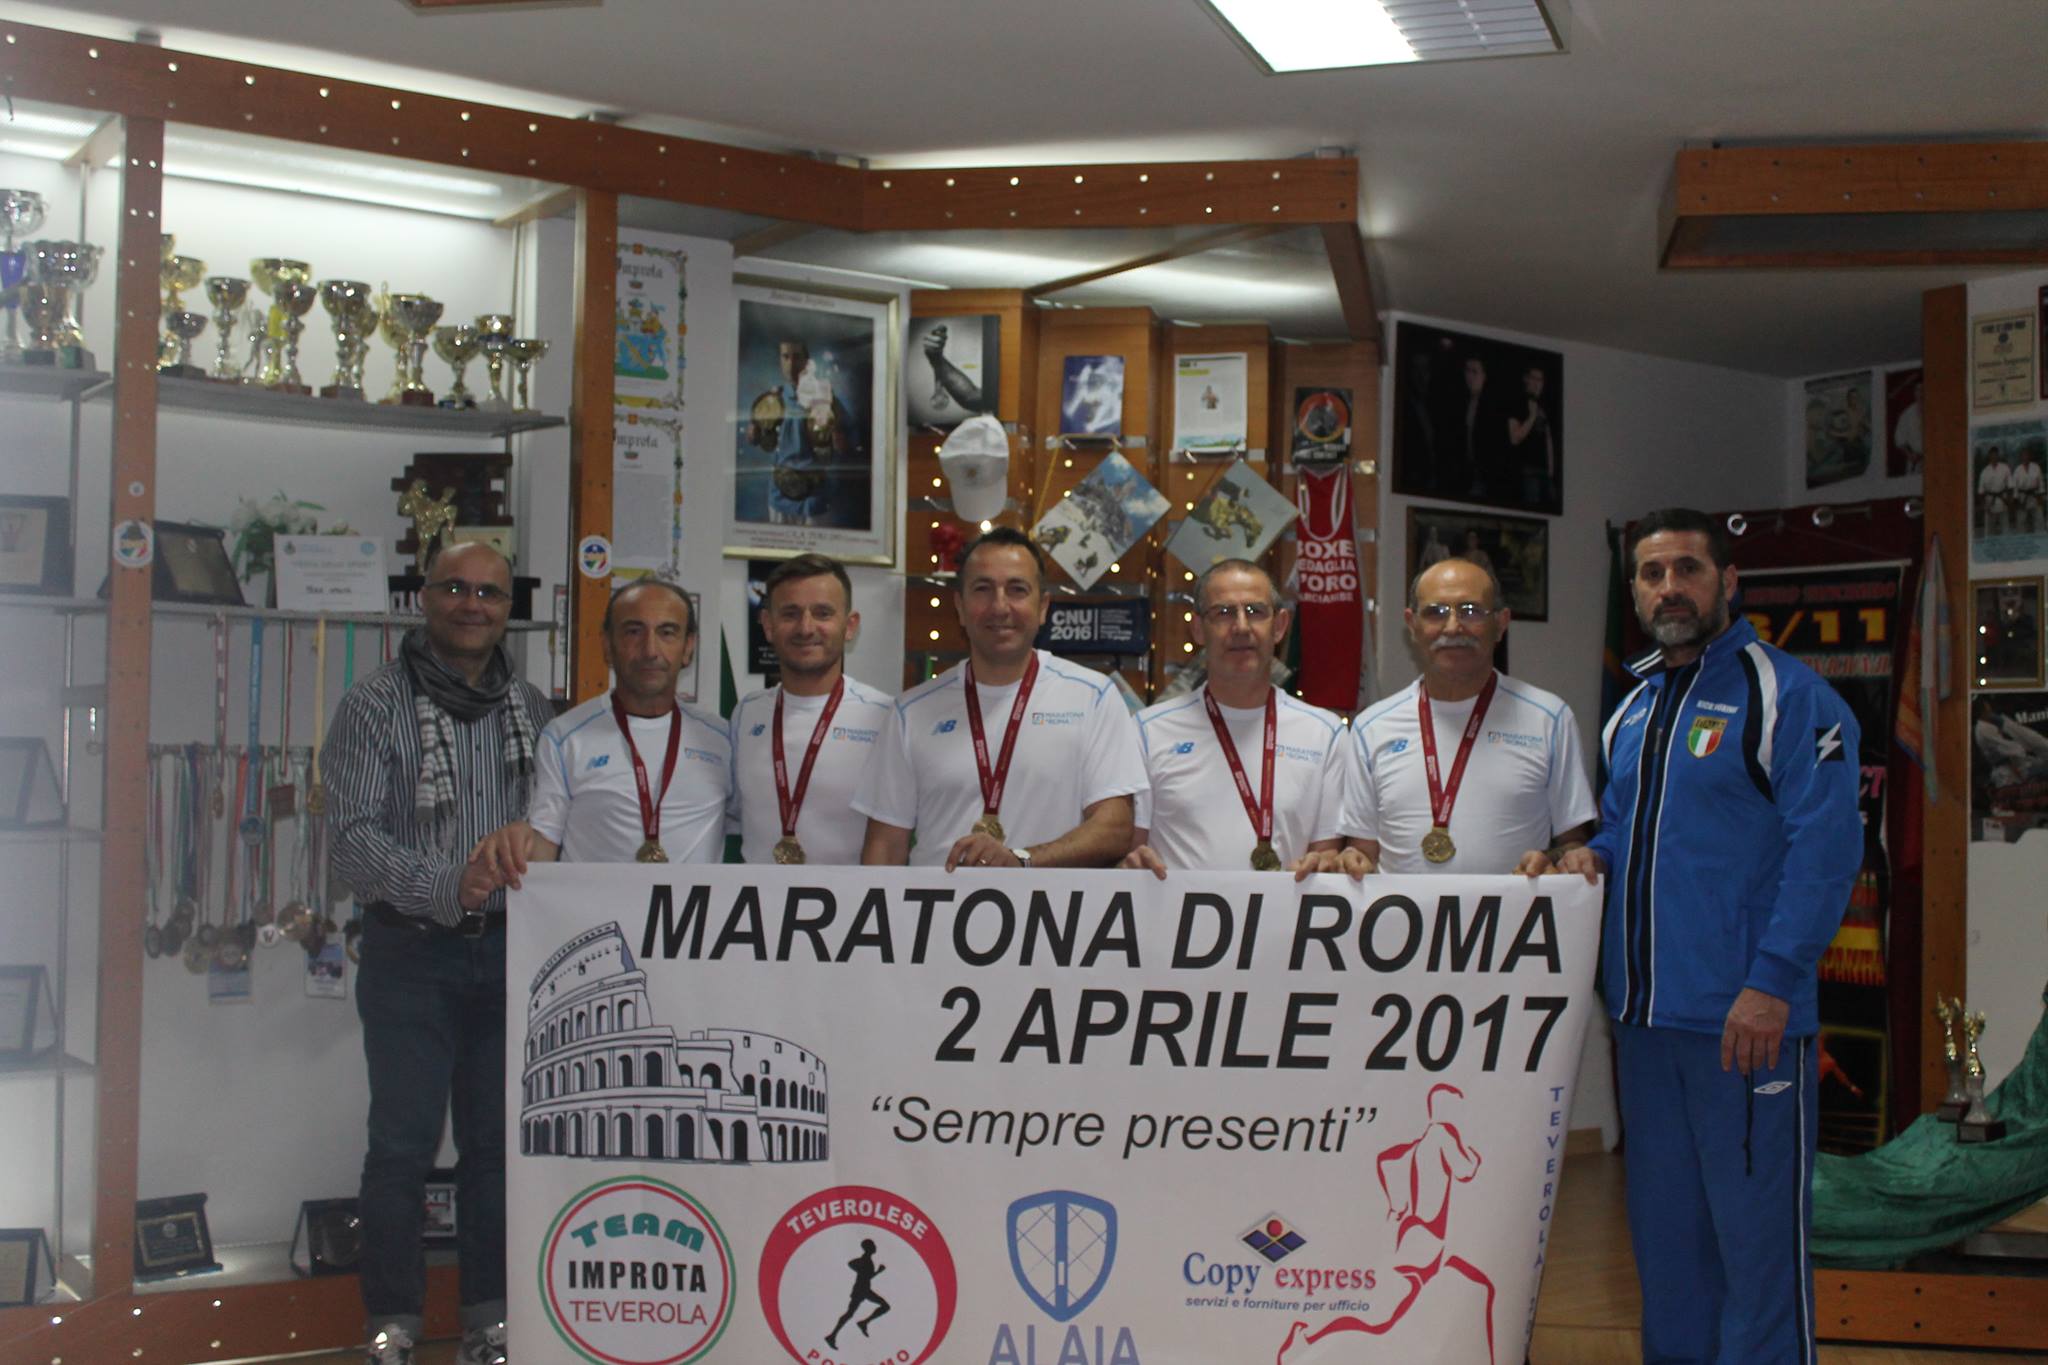  Group Improta alla Maratona di Roma 2017: un pezzo di Teverola alla manifestazione